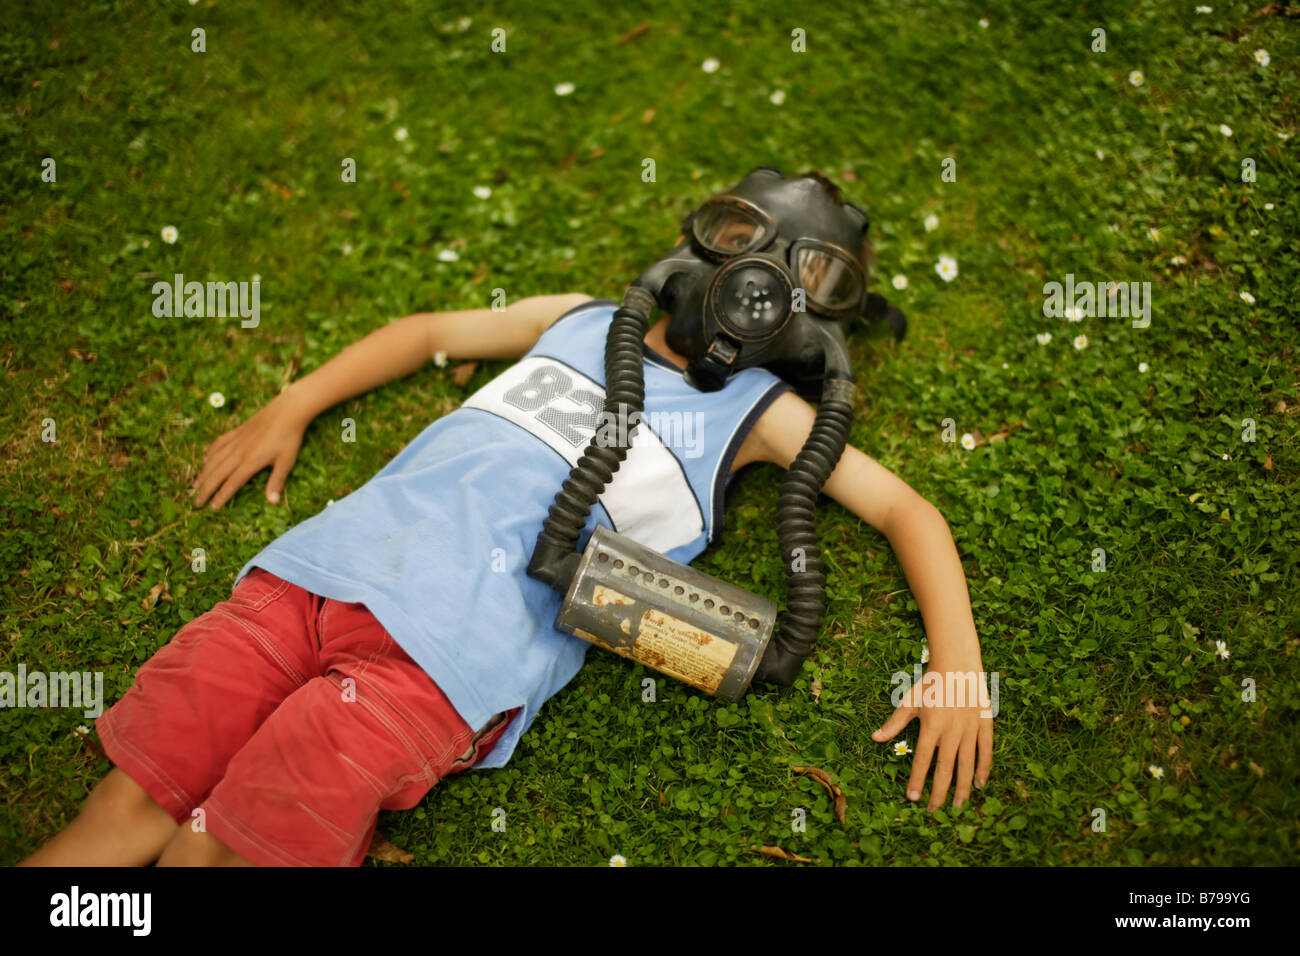 Un garçon de six ans se trouve sur l'herbe verte portant le masque à gaz Banque D'Images